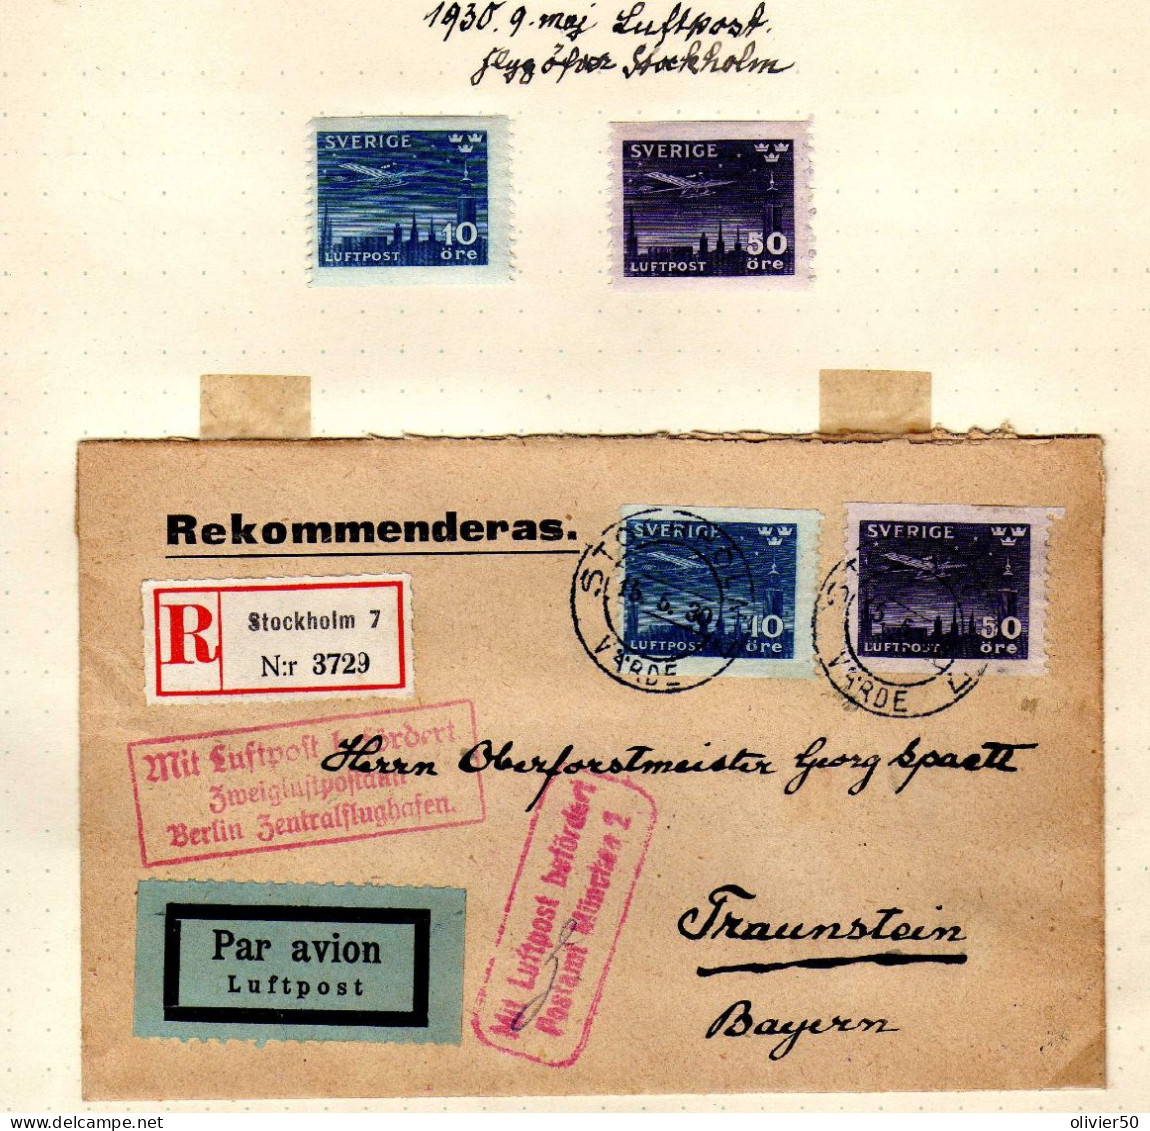 Suede (1930) - Lettre Ouverture Du Service Postal Nocturne Pour La Baviere - Covers & Documents